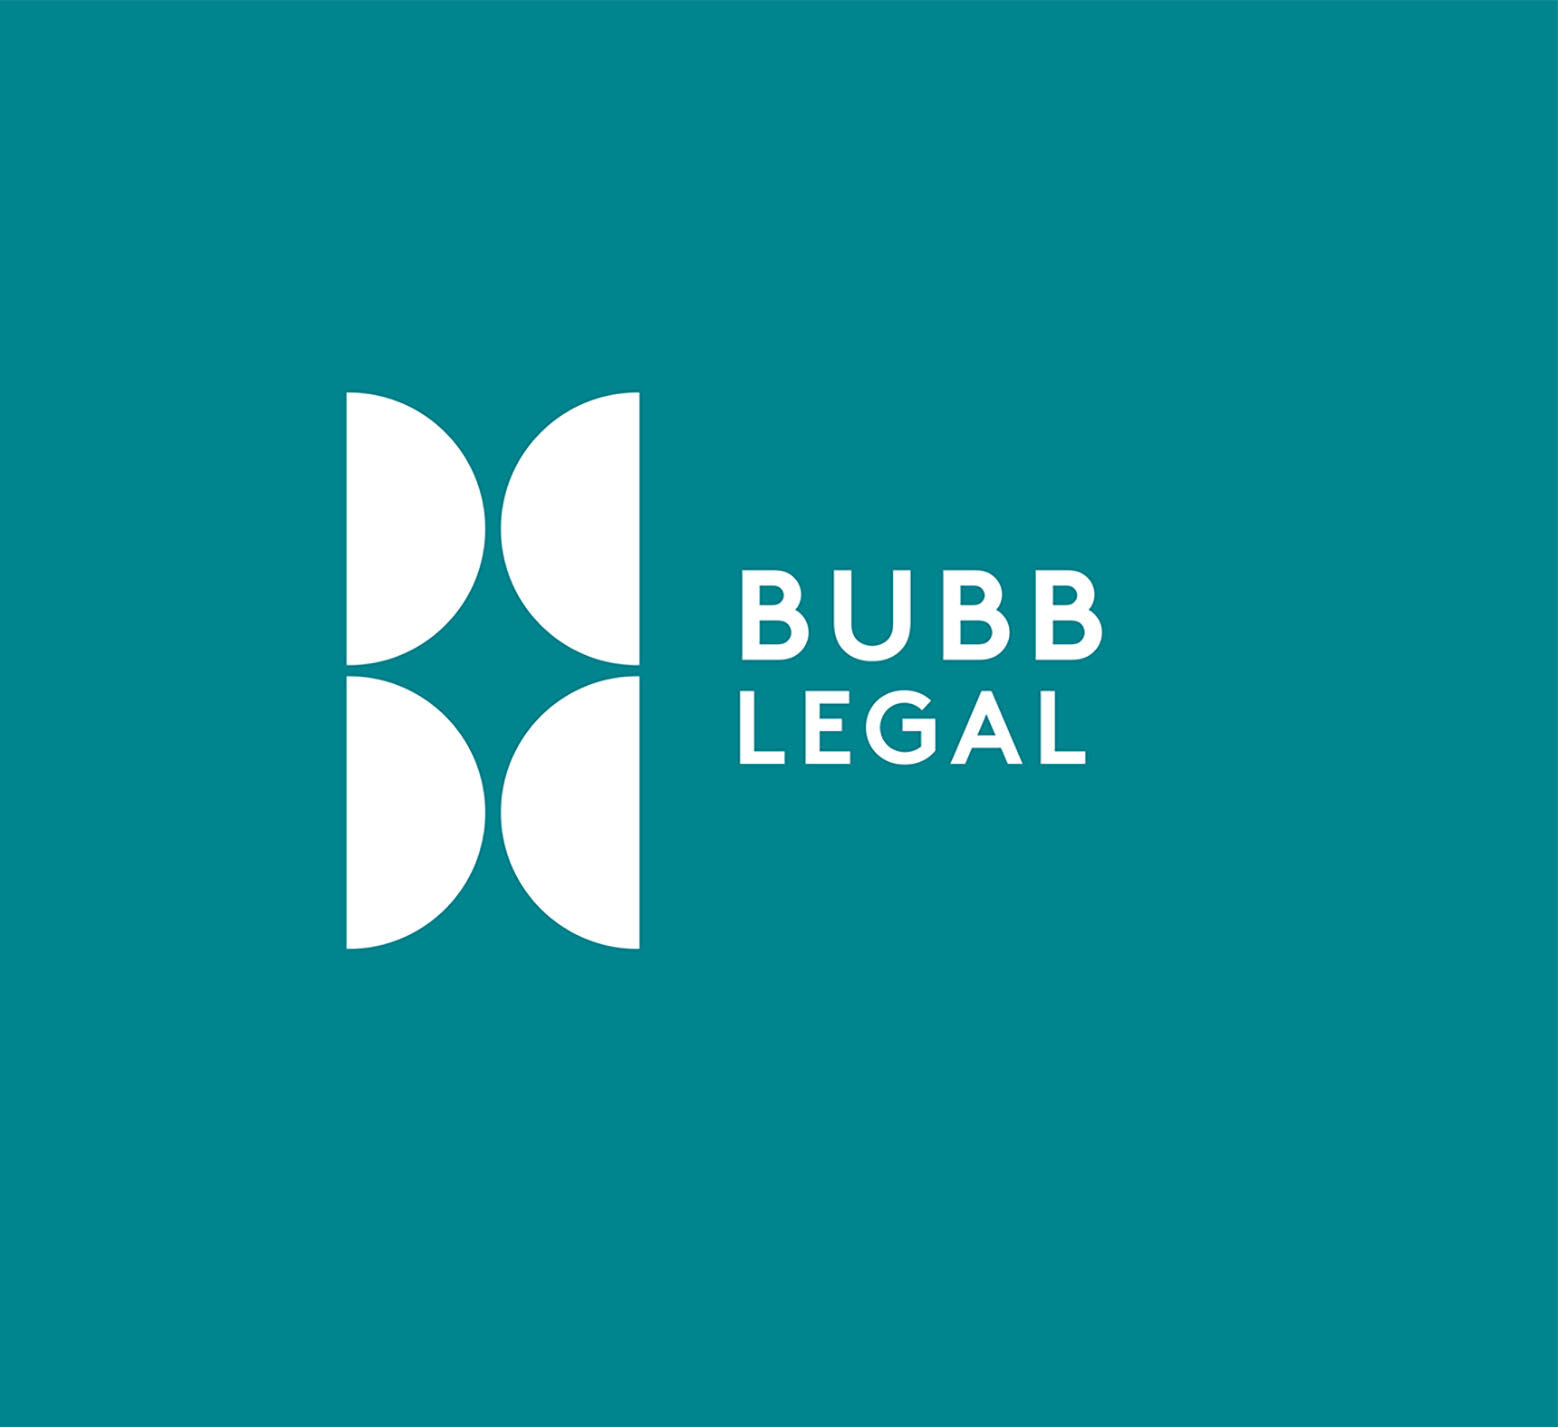 Bubb_Legal_logo_sam.jpg